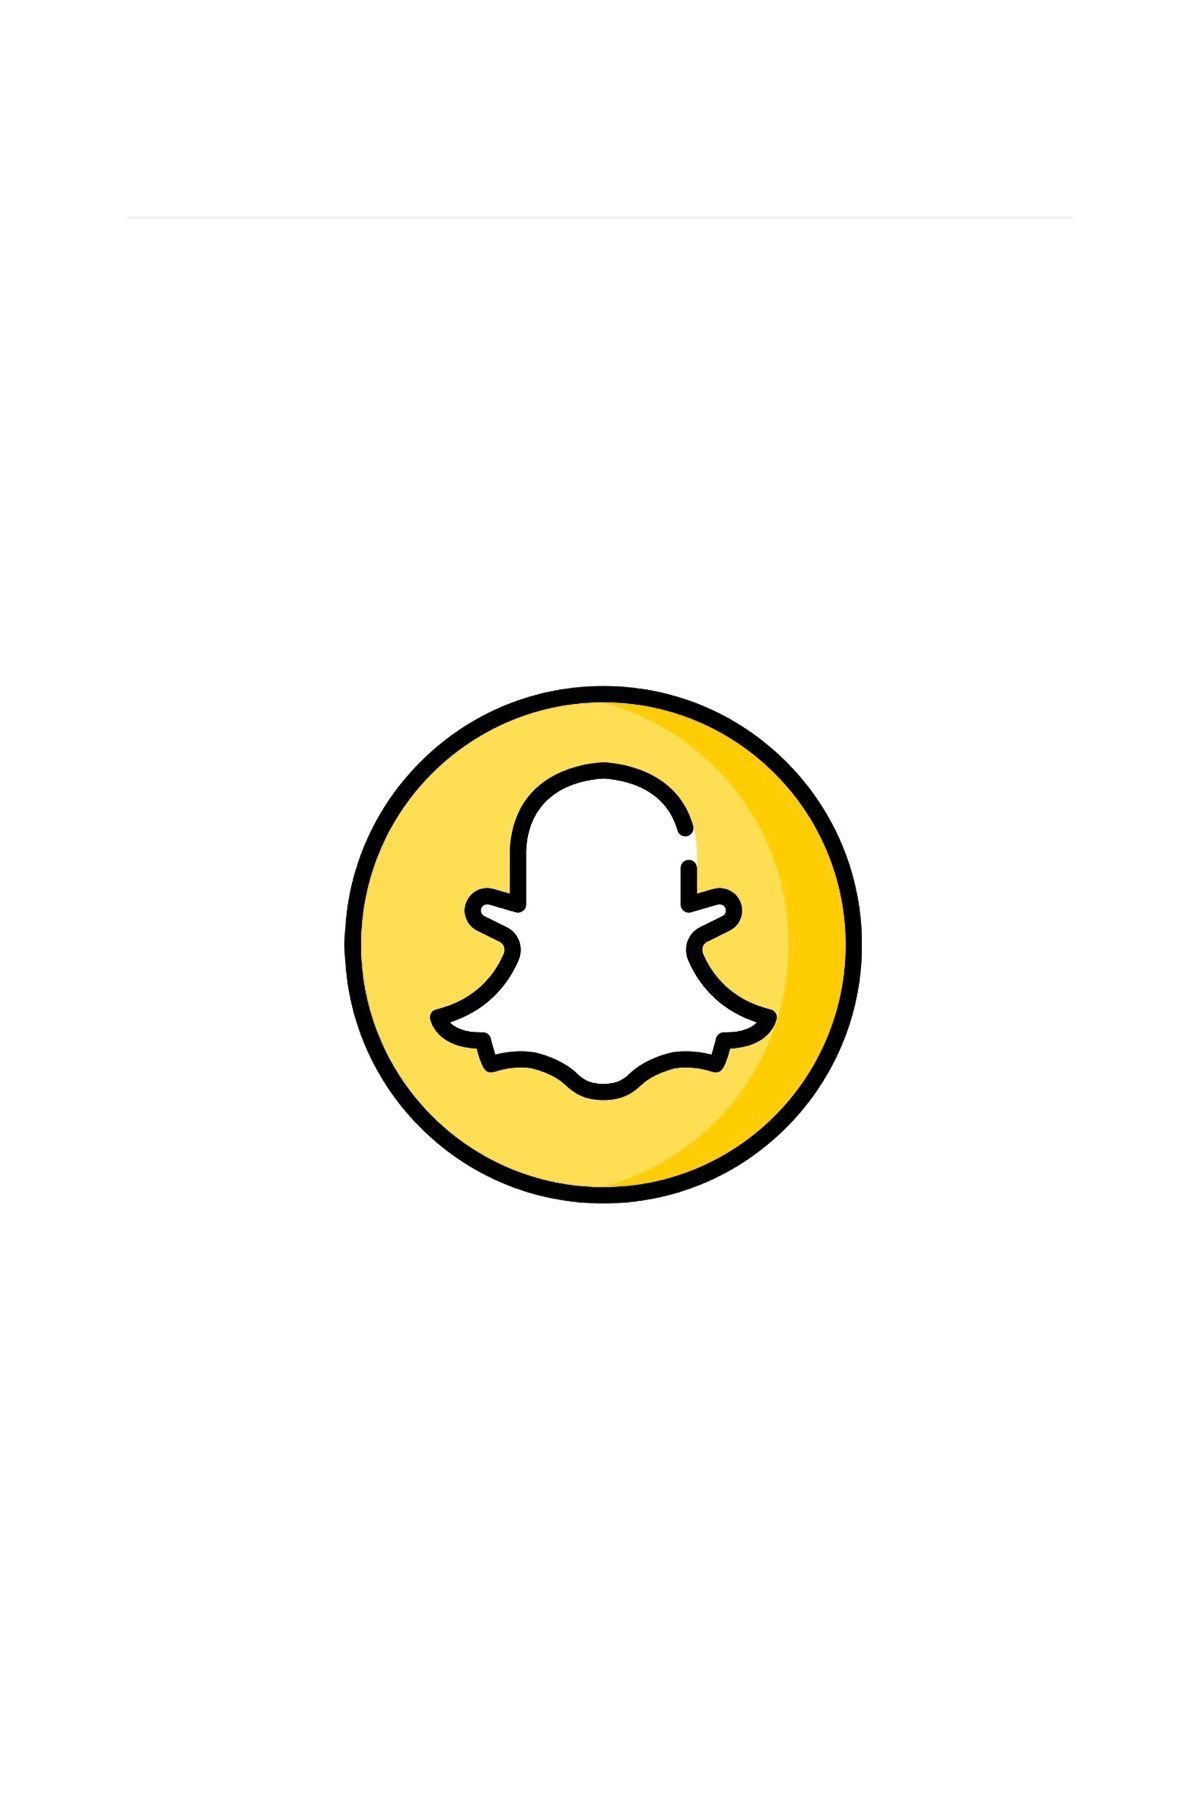 Snapchat Logo Wallpapers - Wallpaper Cave